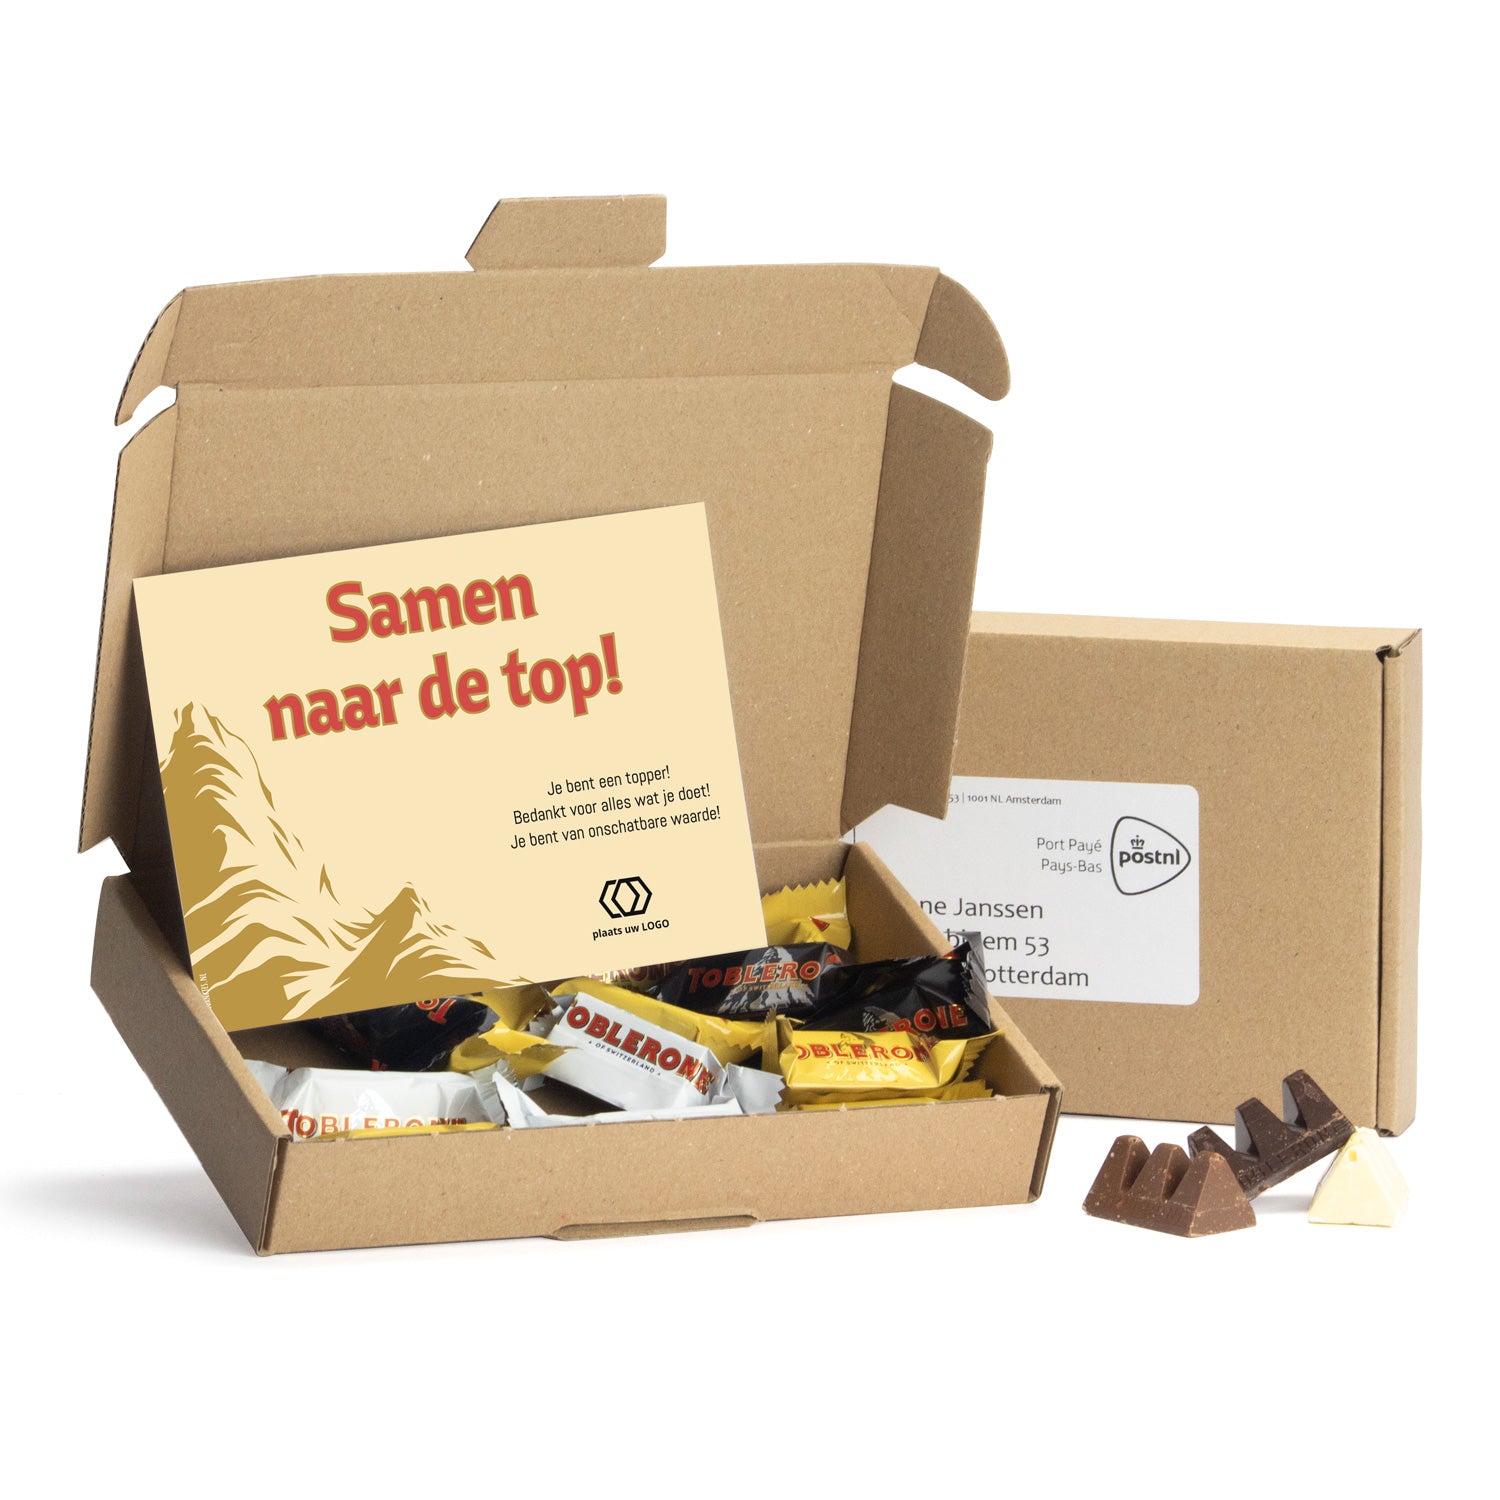 Topperpakket met Toblerone chocolade - Verpleging - Bedankjes.nl